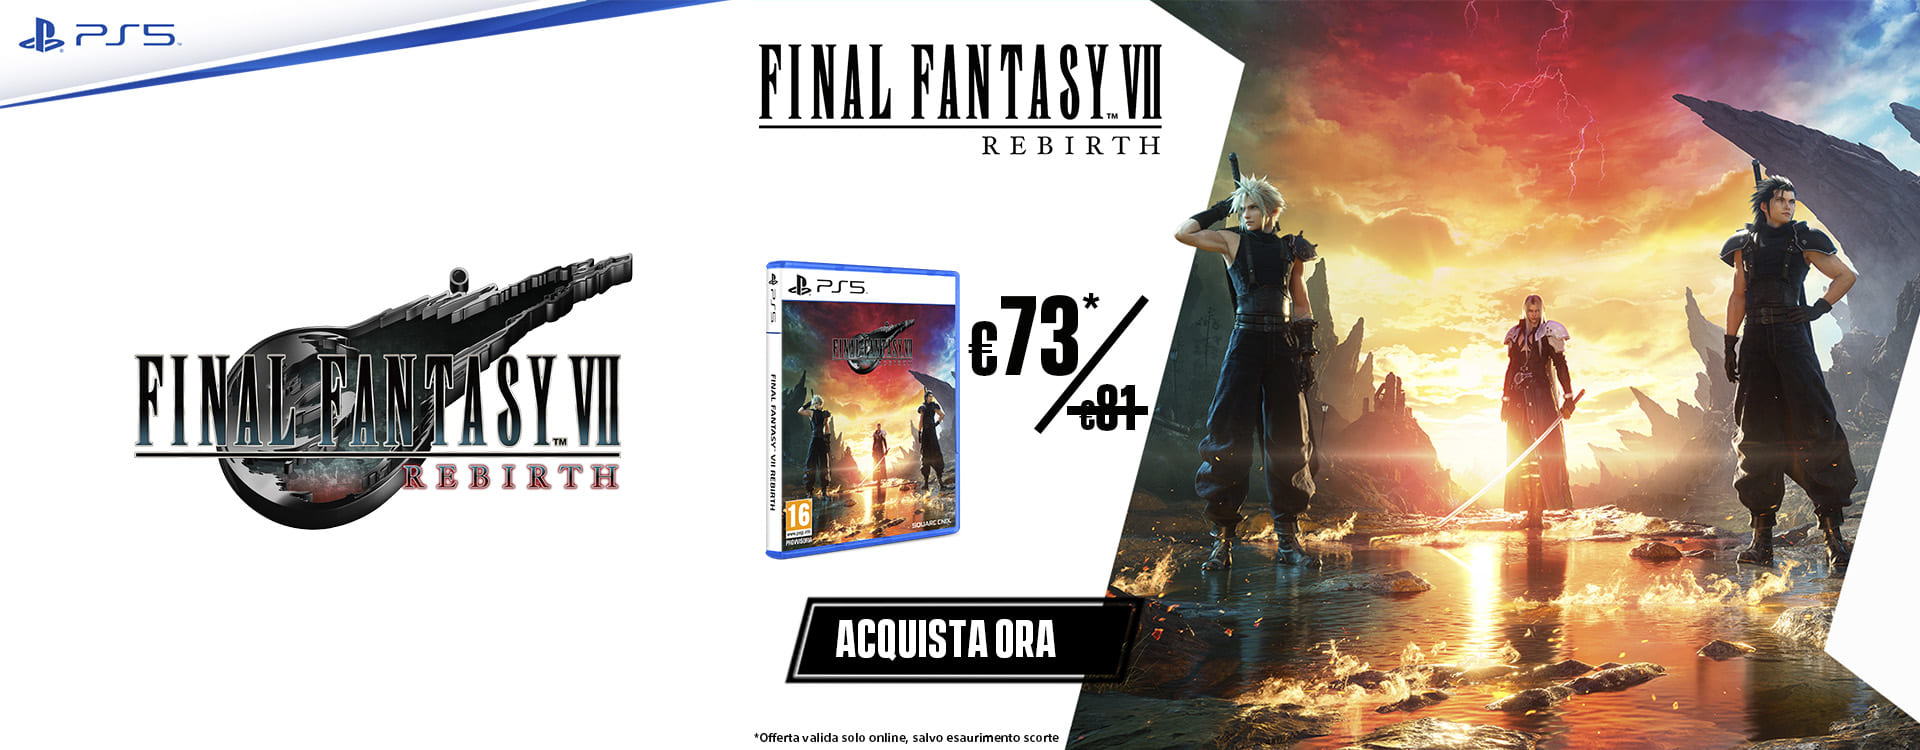 Final Fantasy 7 Rebirth Acquista Ora